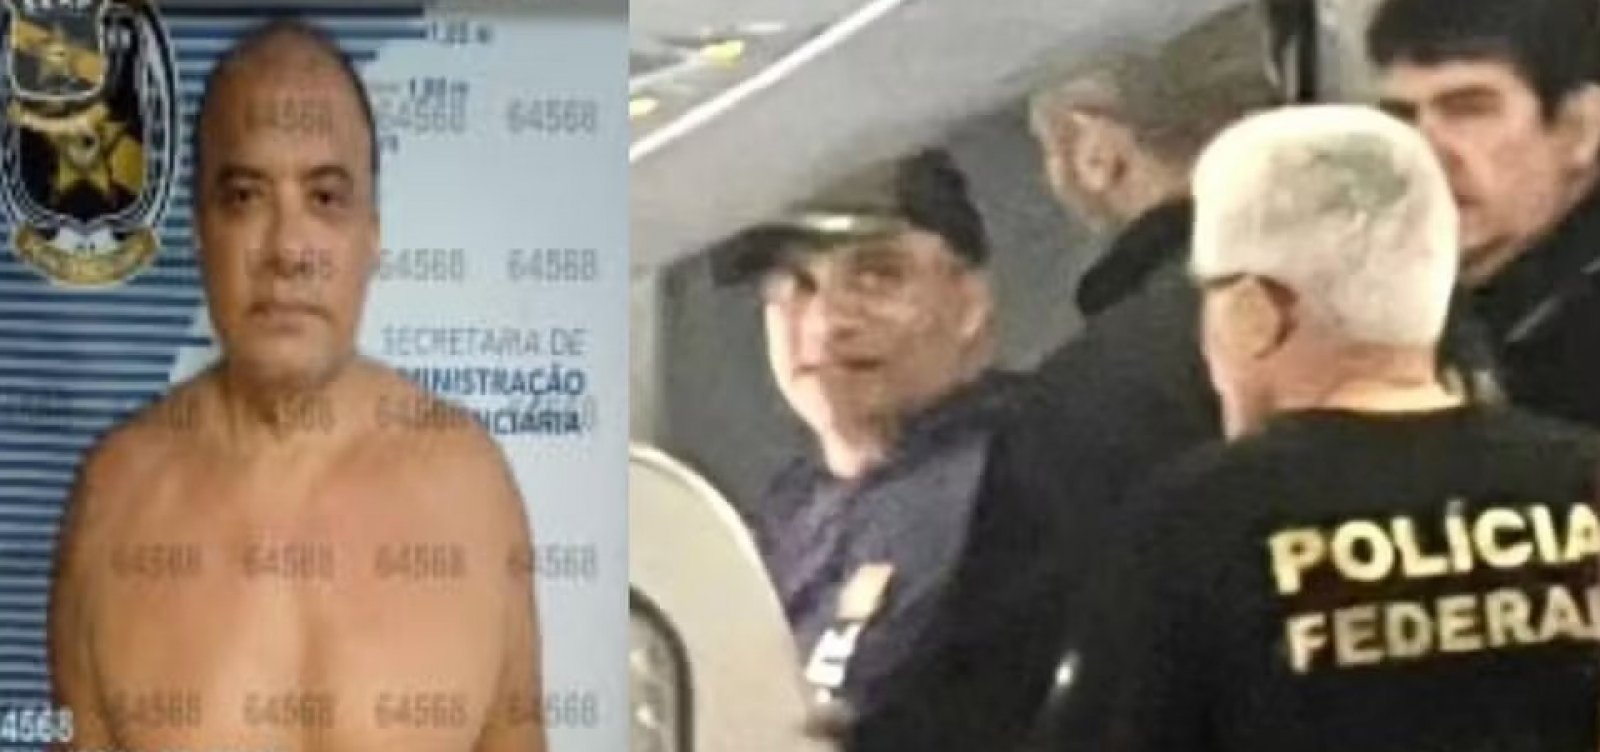 Ex-deputado Wladimir Costa tem liberdade provisória revogada e é preso novamente no Pará